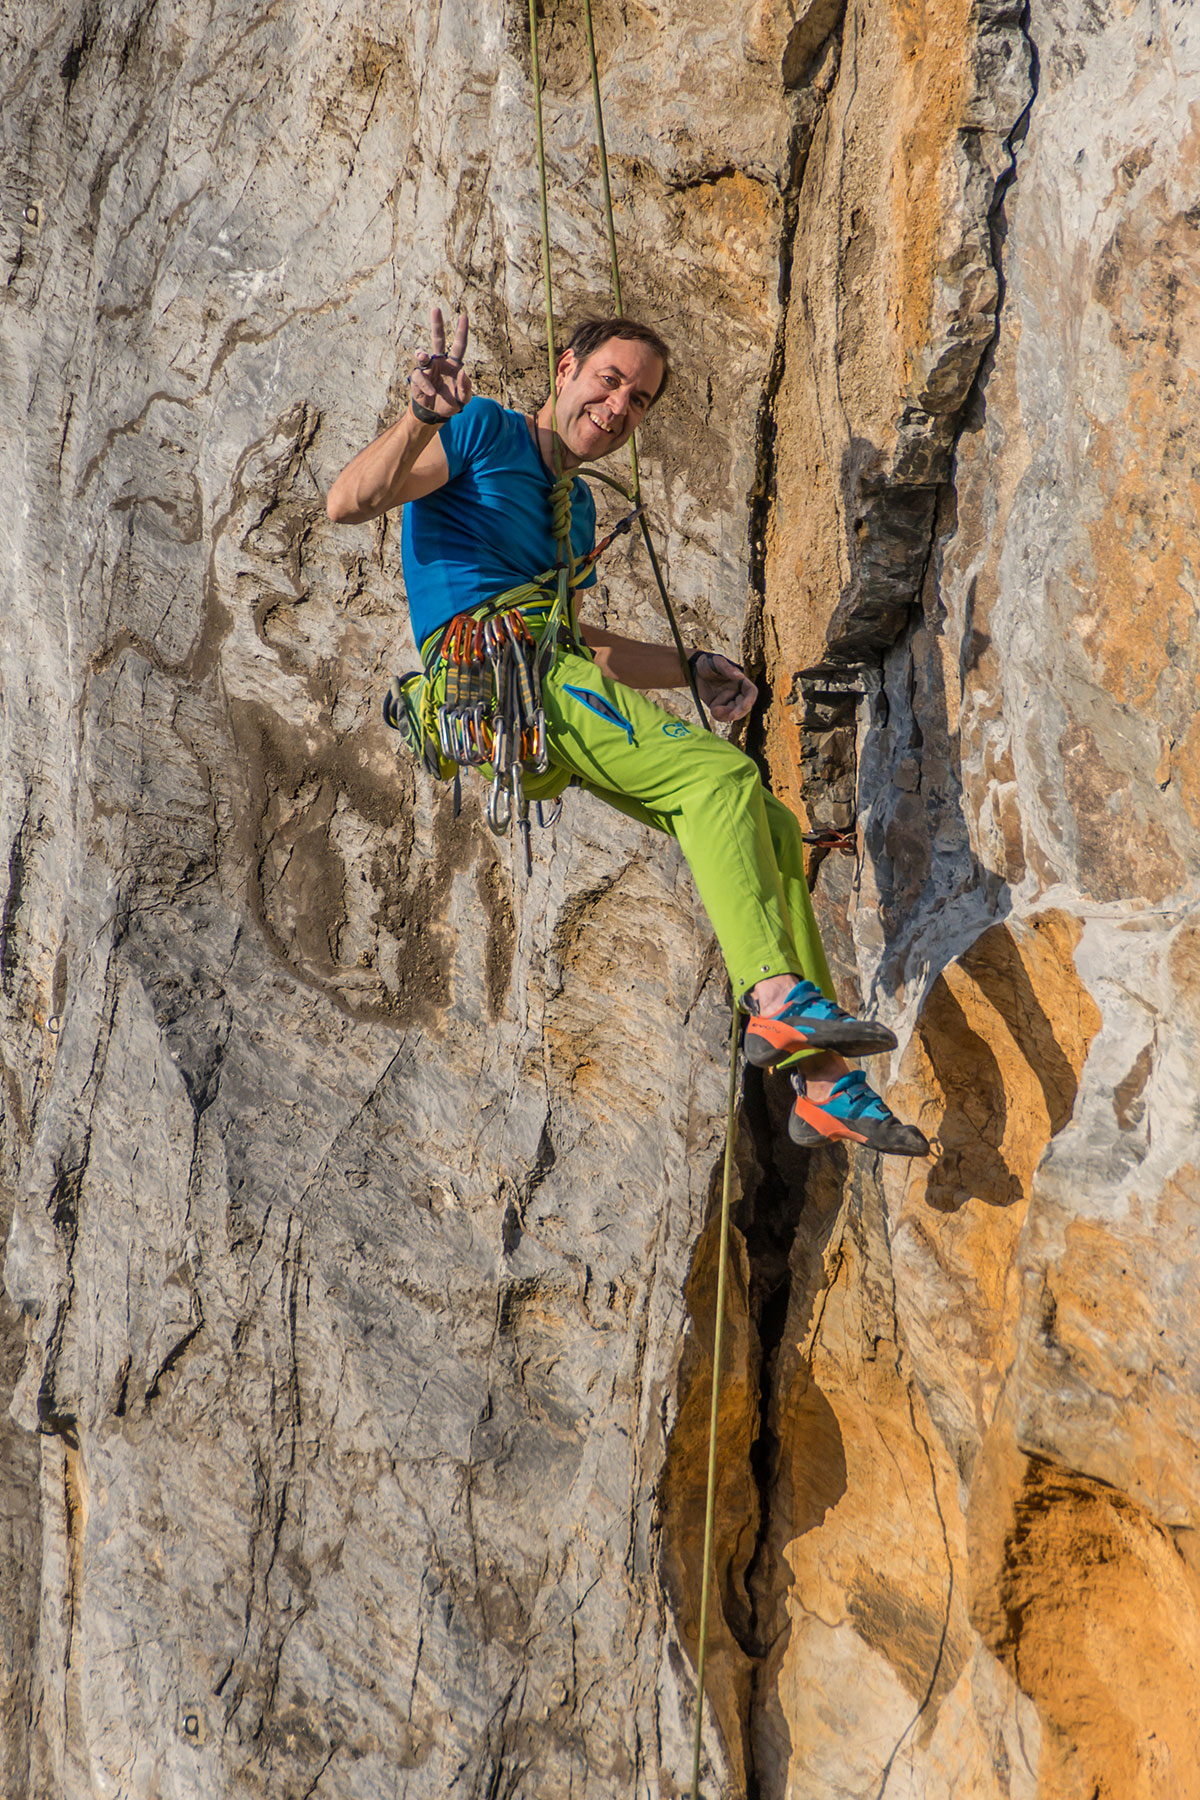 Warstein, Hillenberg, Route „Sidewinder“, 9-, Climber Mathias Weck